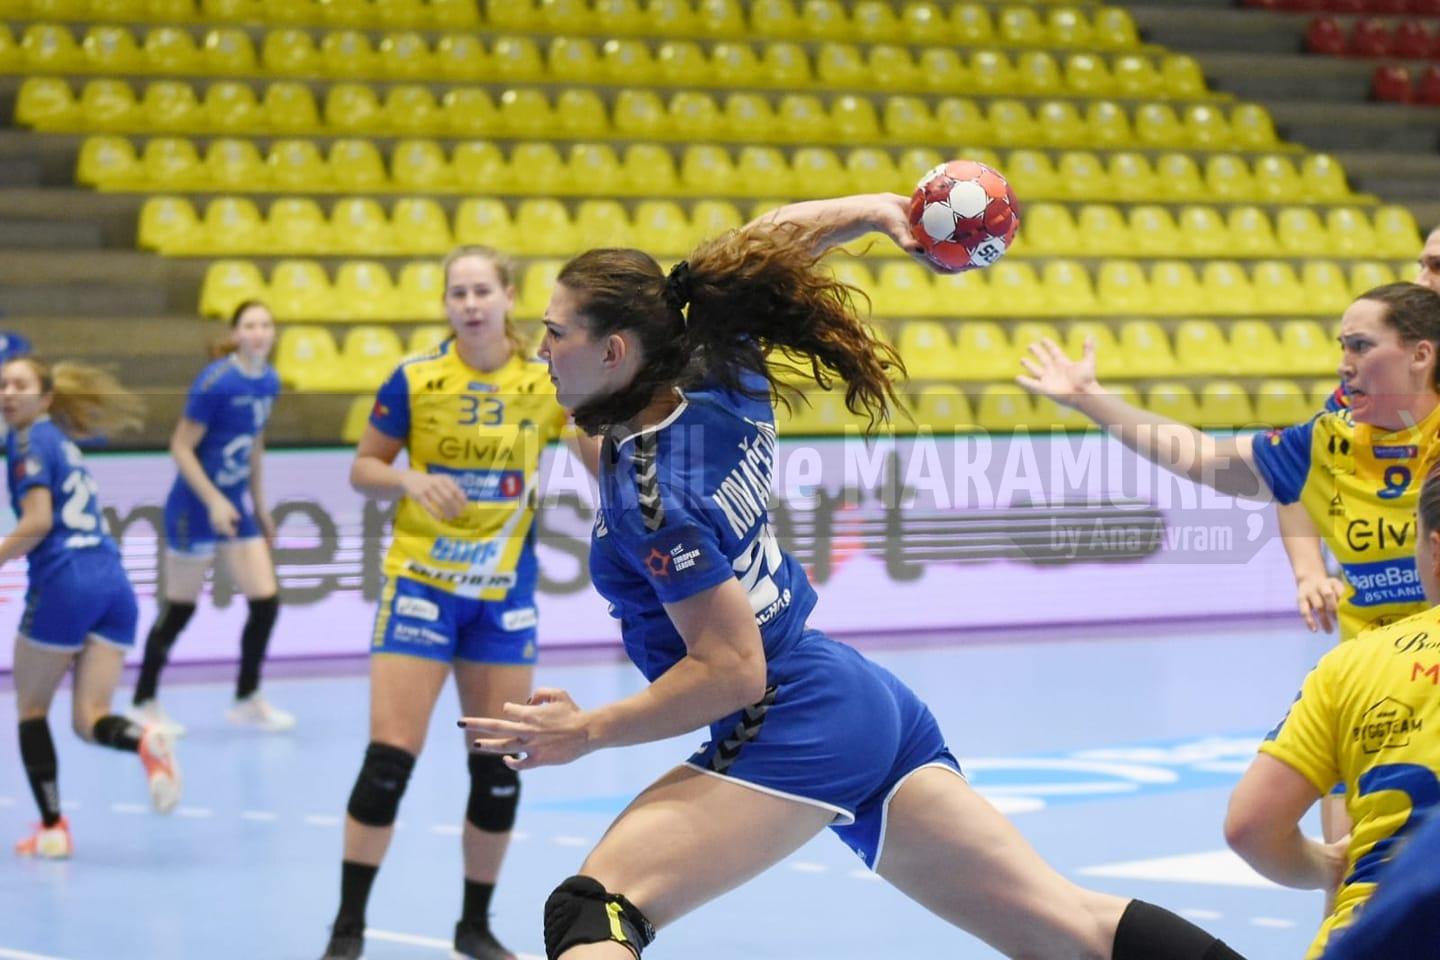 Handbal feminin: Debut cu succes pentru Minaur în grupele EHF European League